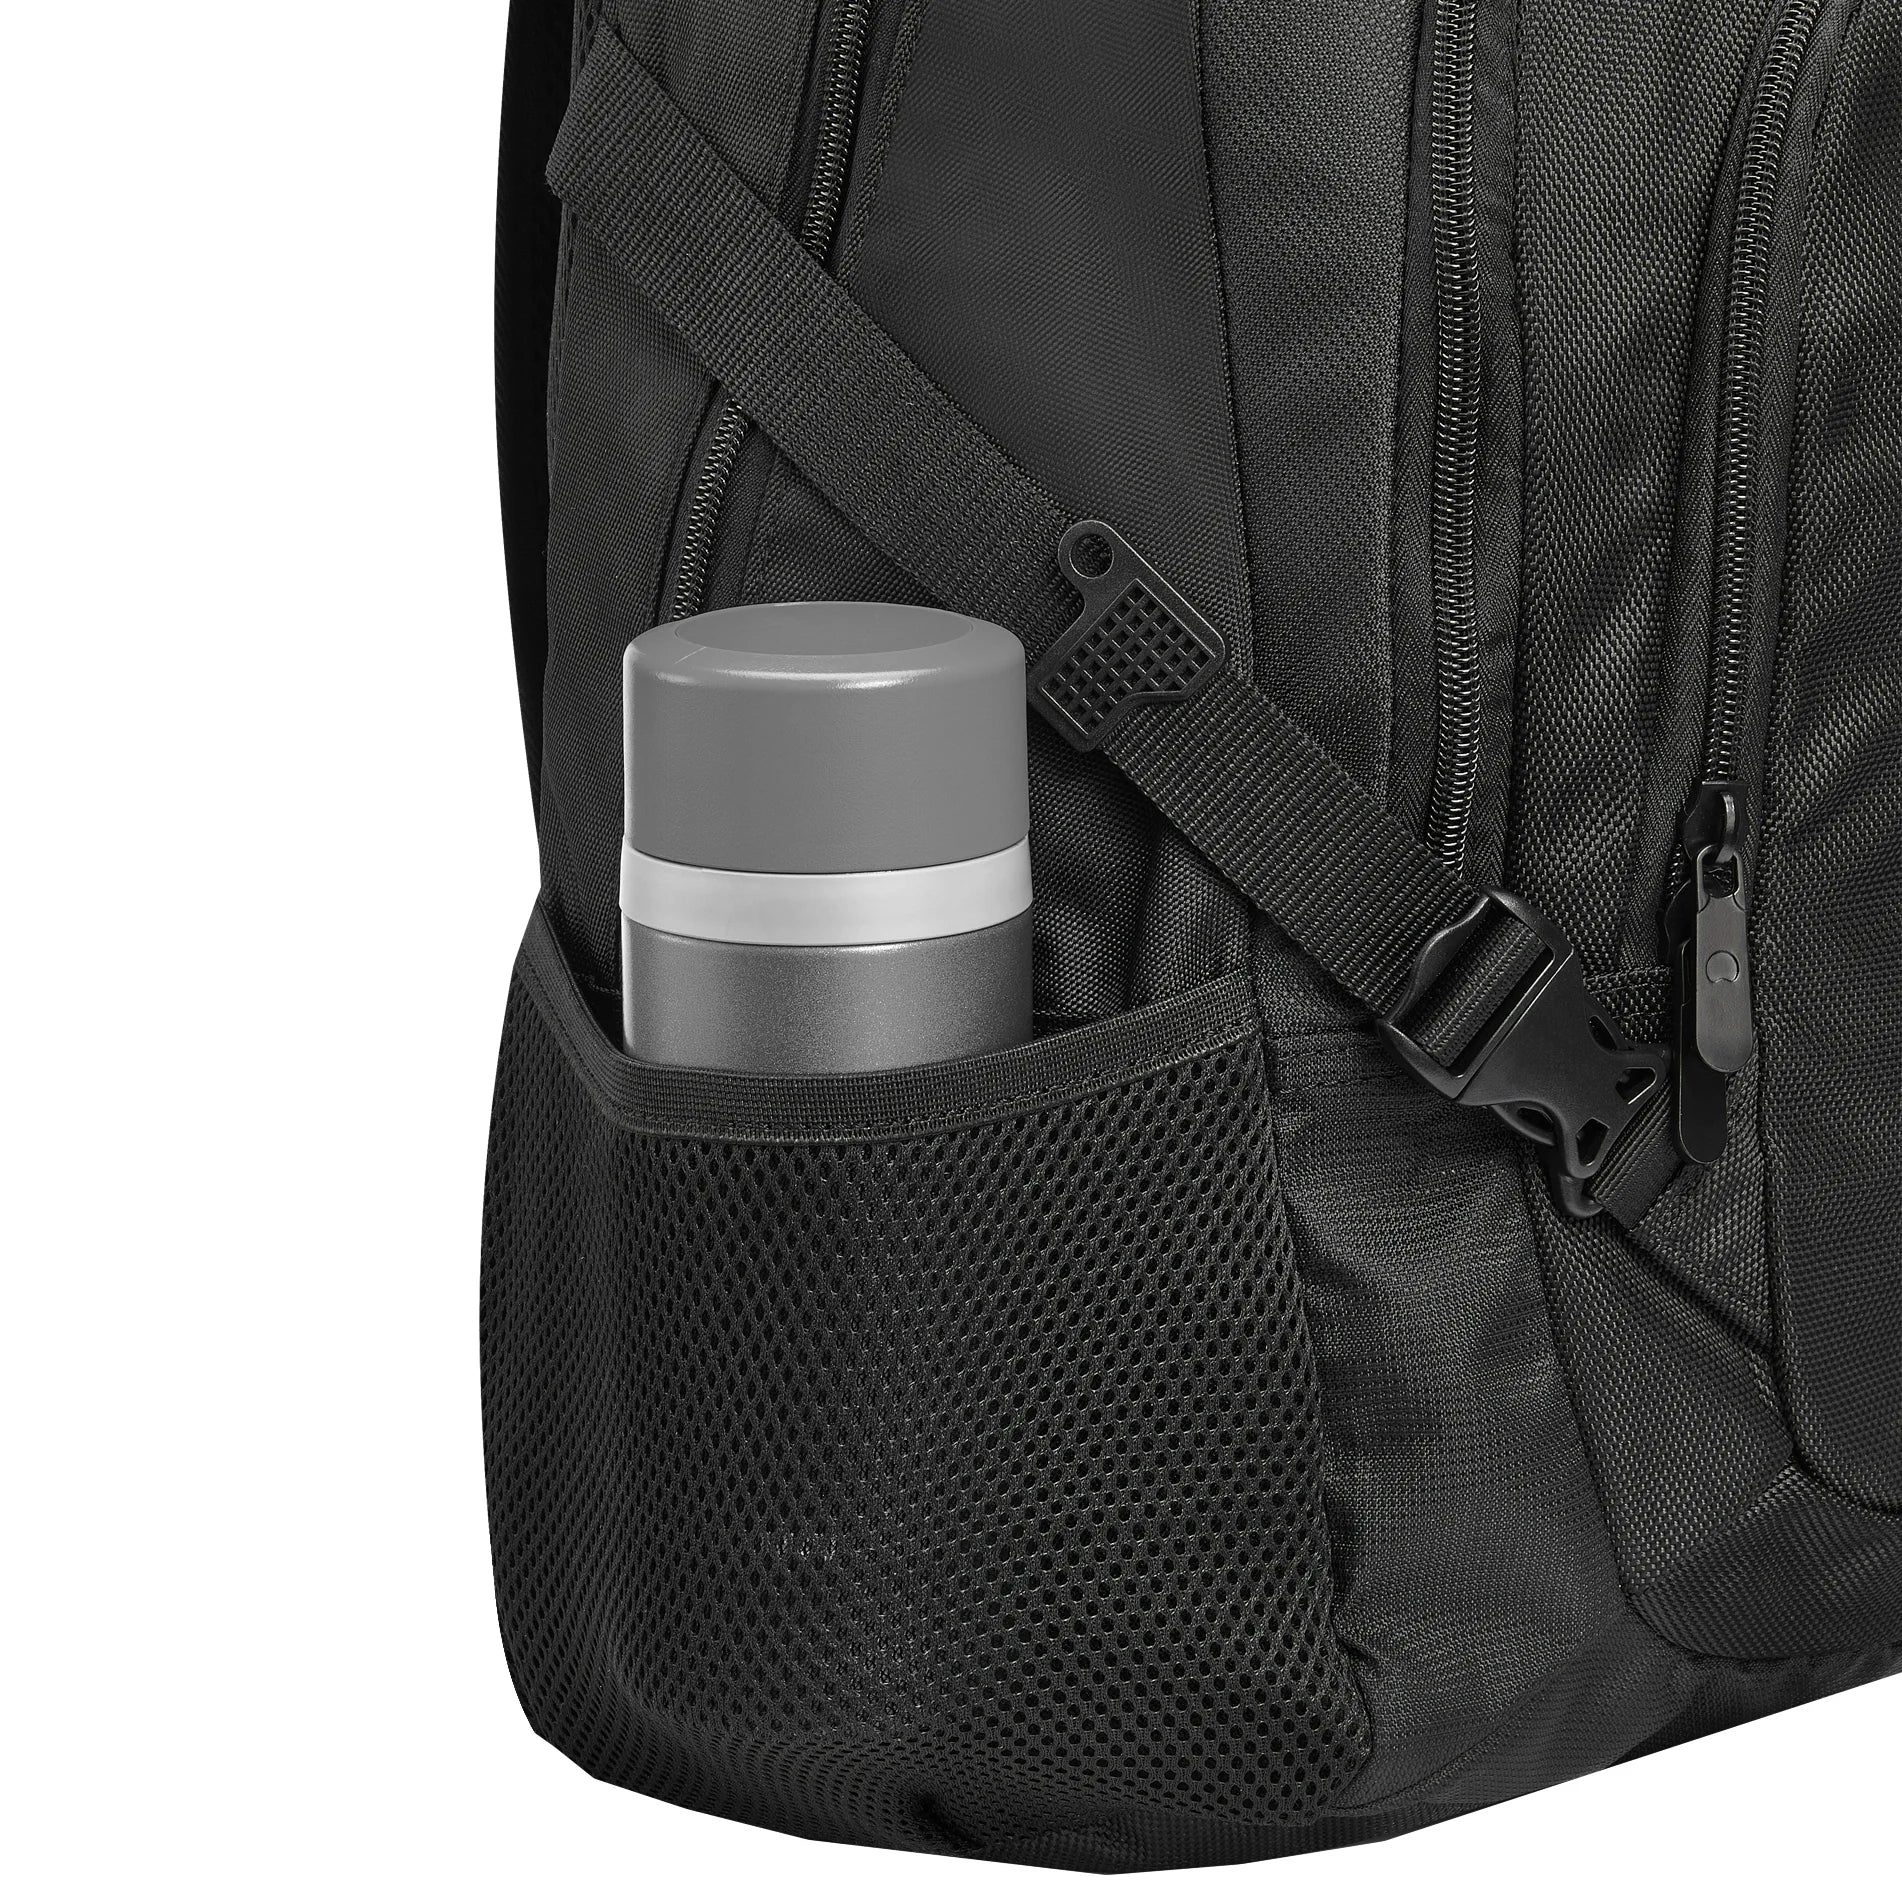 Delsey Element Backpacks Navigator Sac à dos 48 cm - Noir